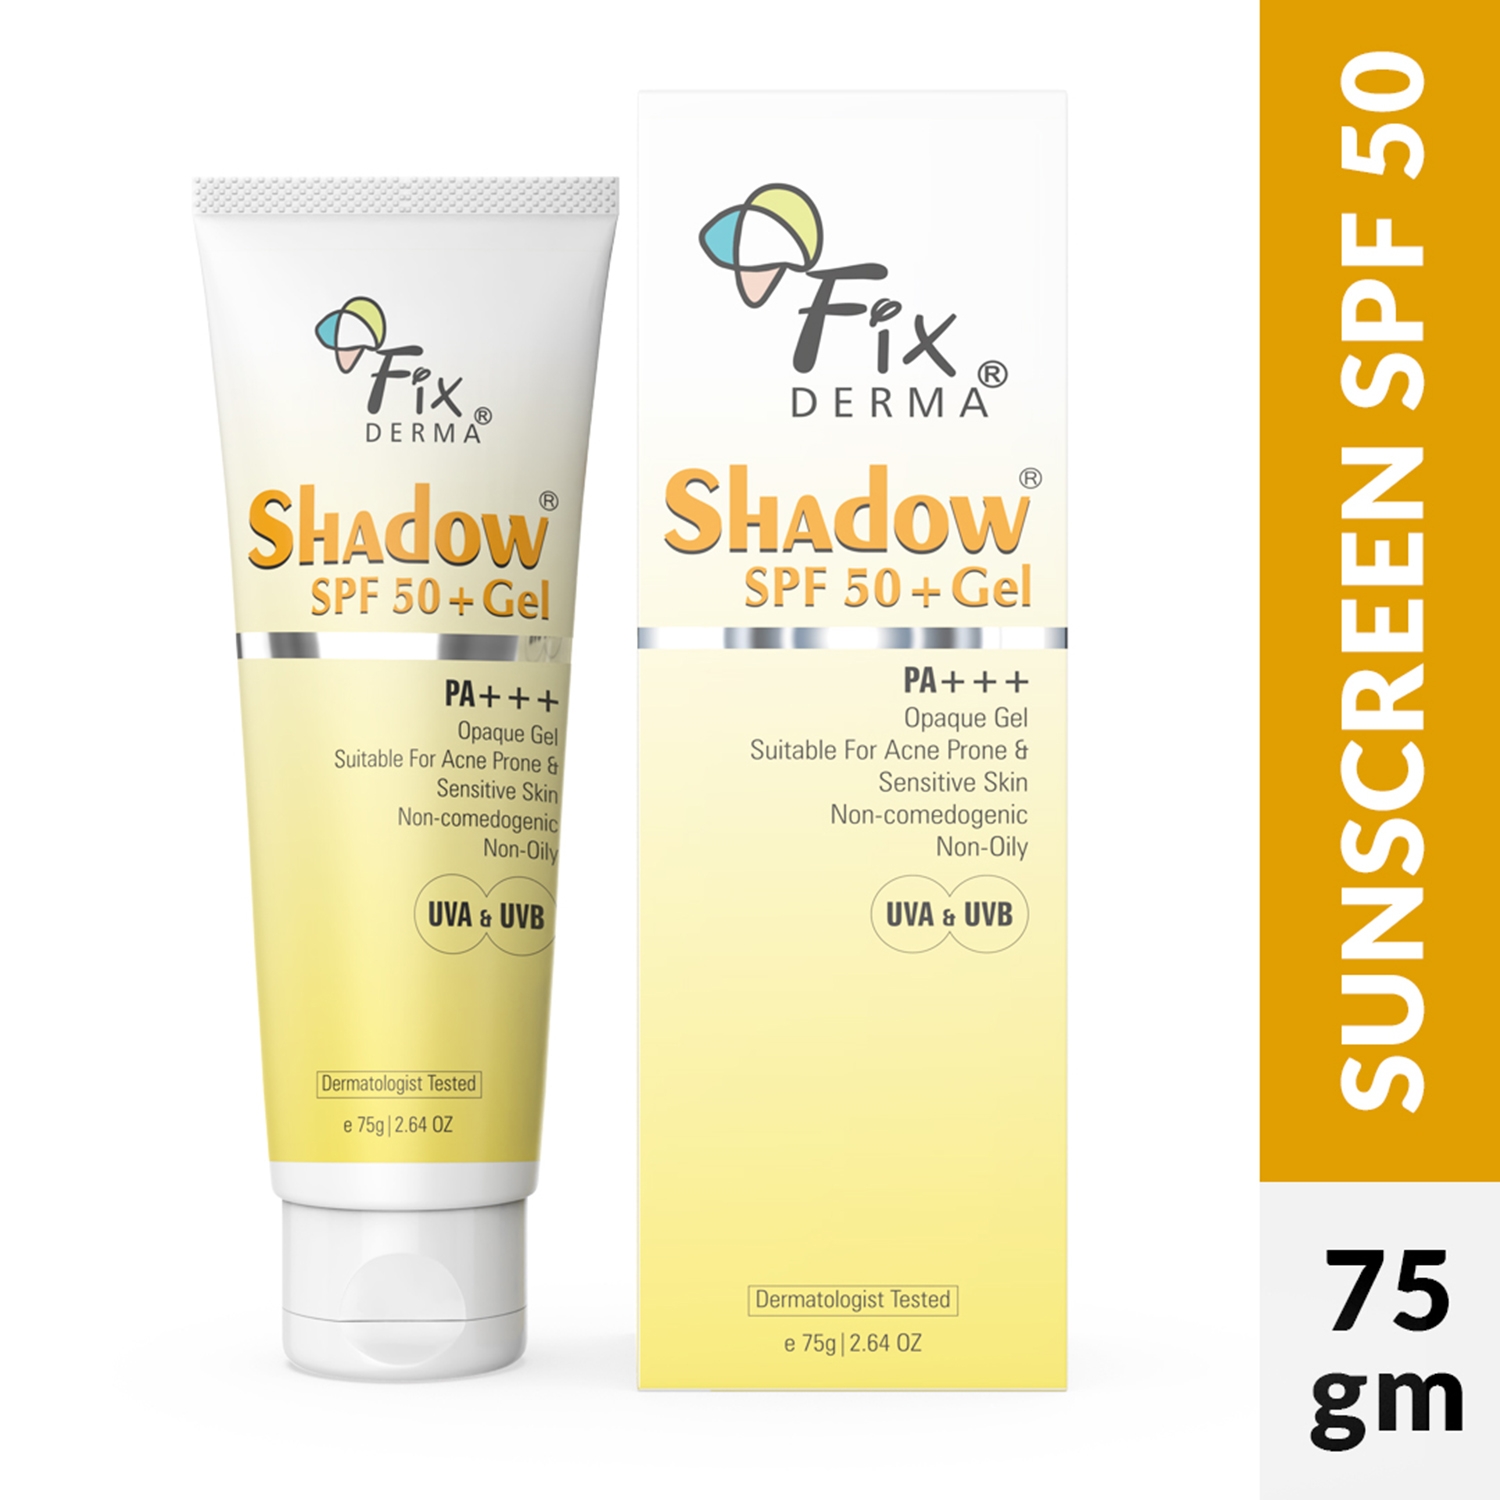 Fixderma Shadow SPF 50+ Gel (75g)